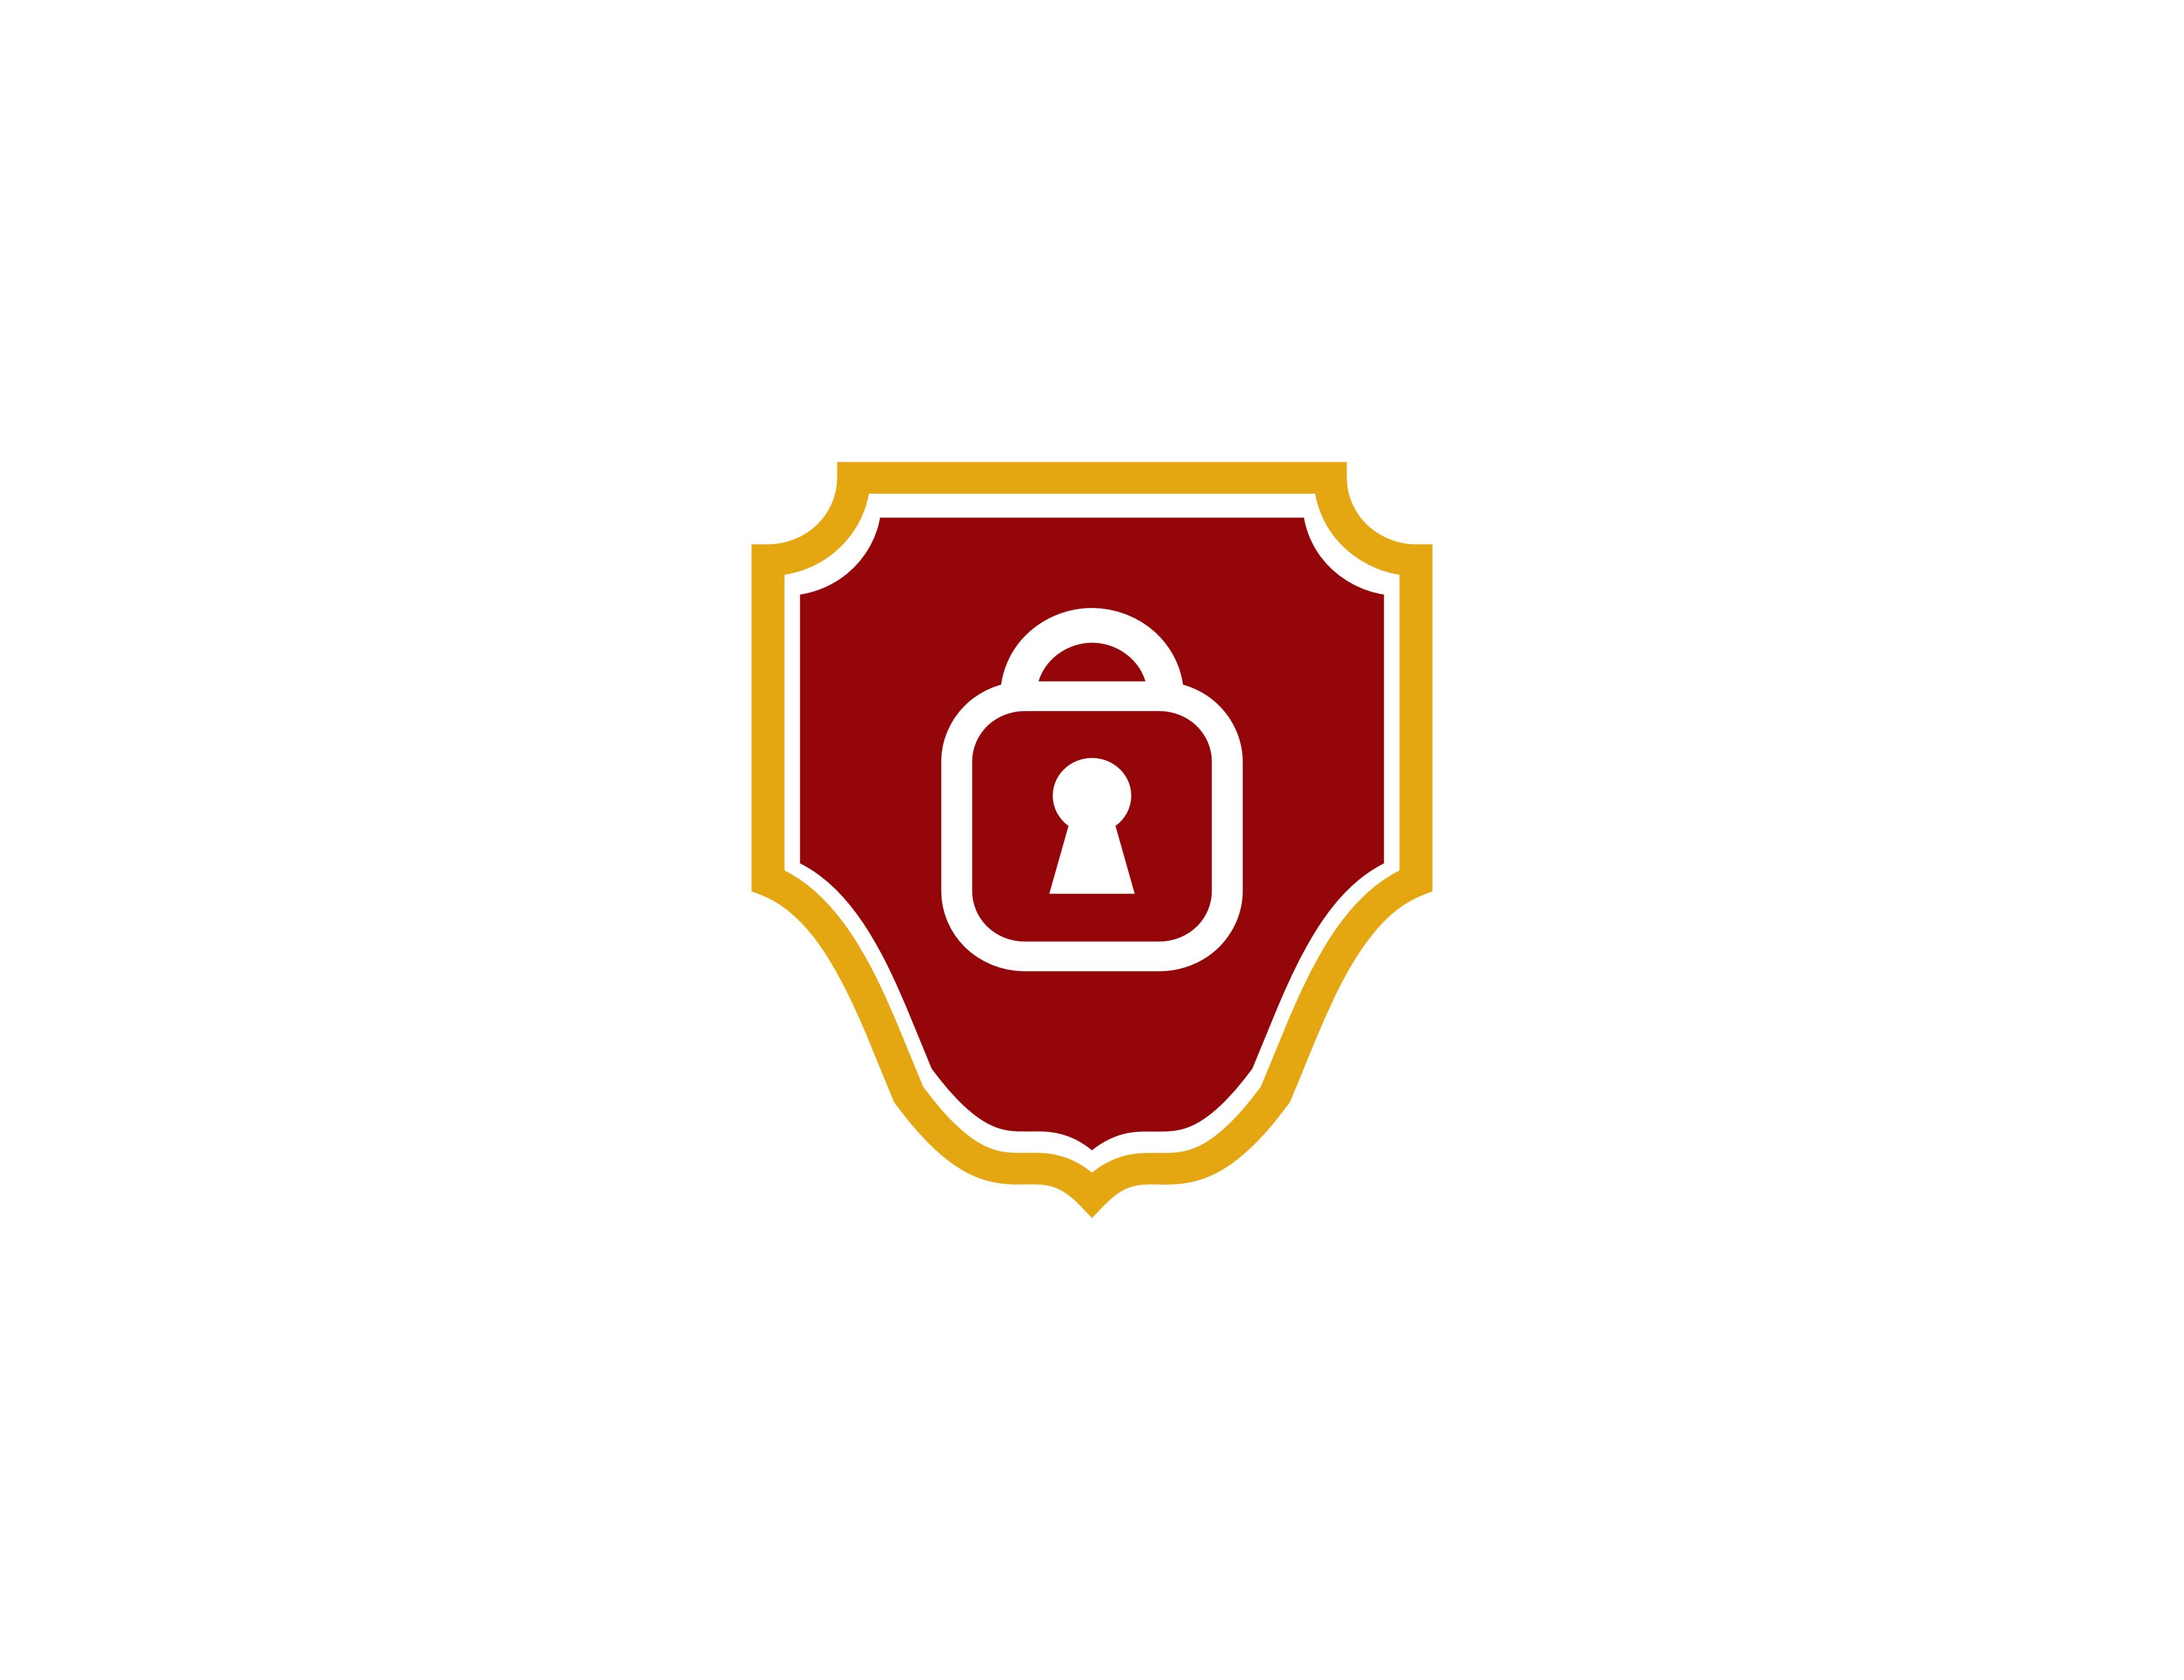 Red Security Shield Logo - Security shield logo Graphic by meisuseno - Creative Fabrica